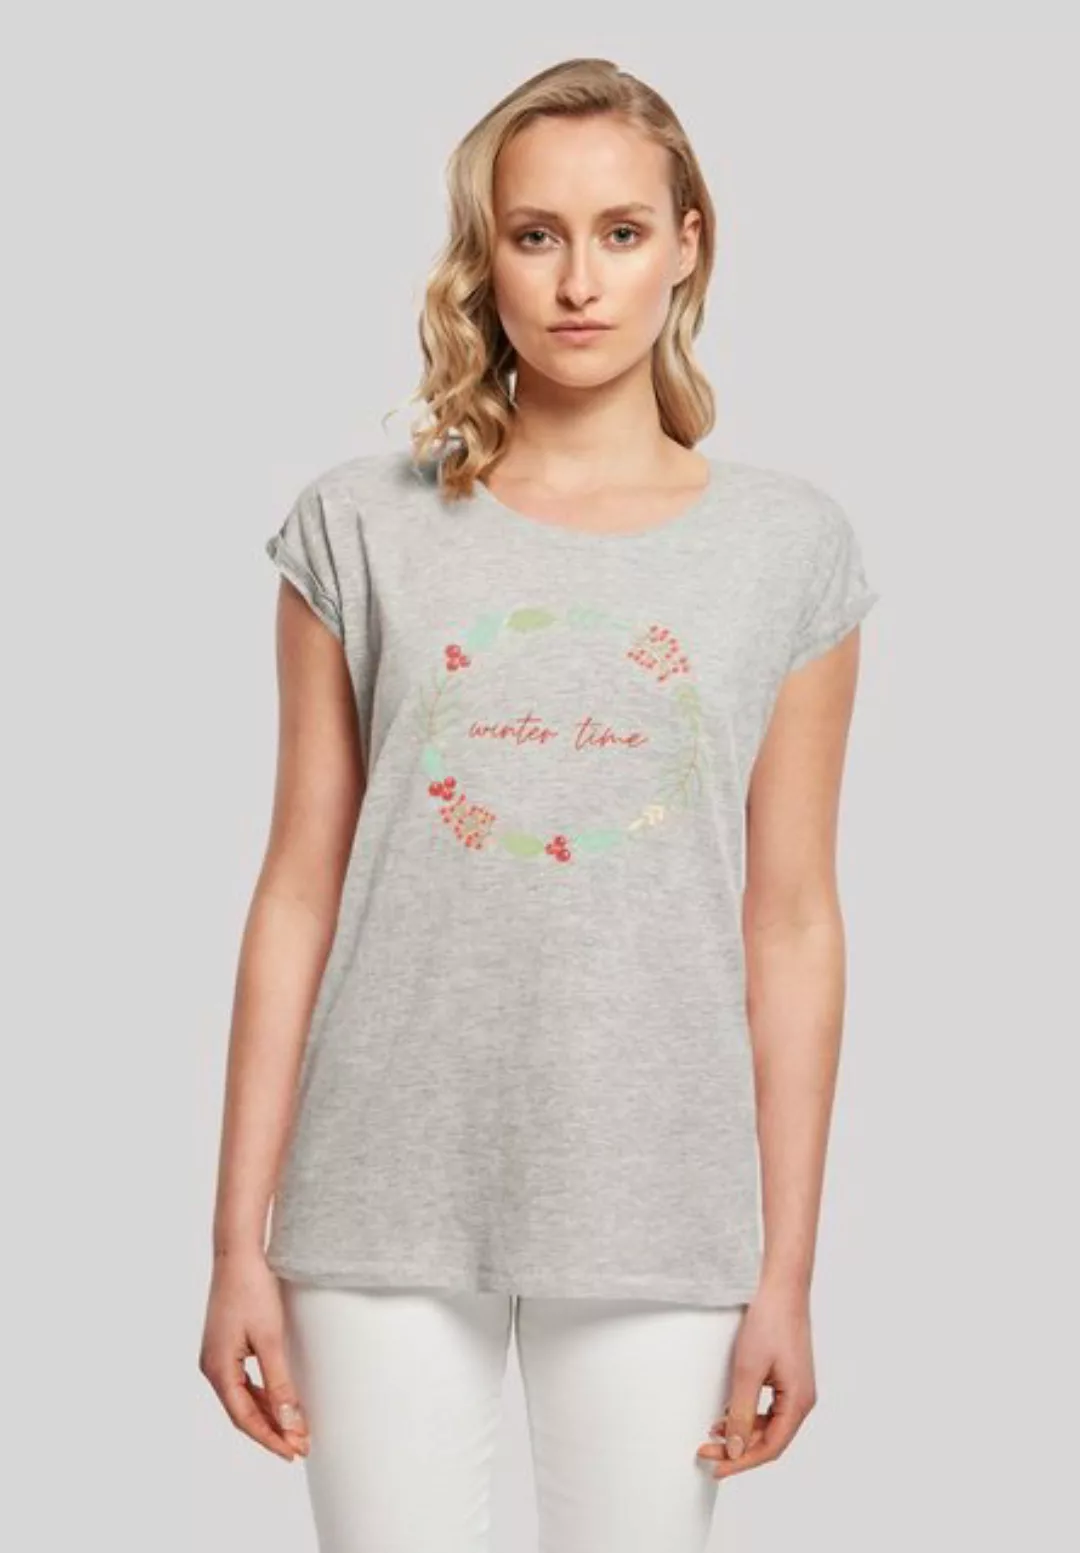 F4NT4STIC T-Shirt "Winter Time" günstig online kaufen